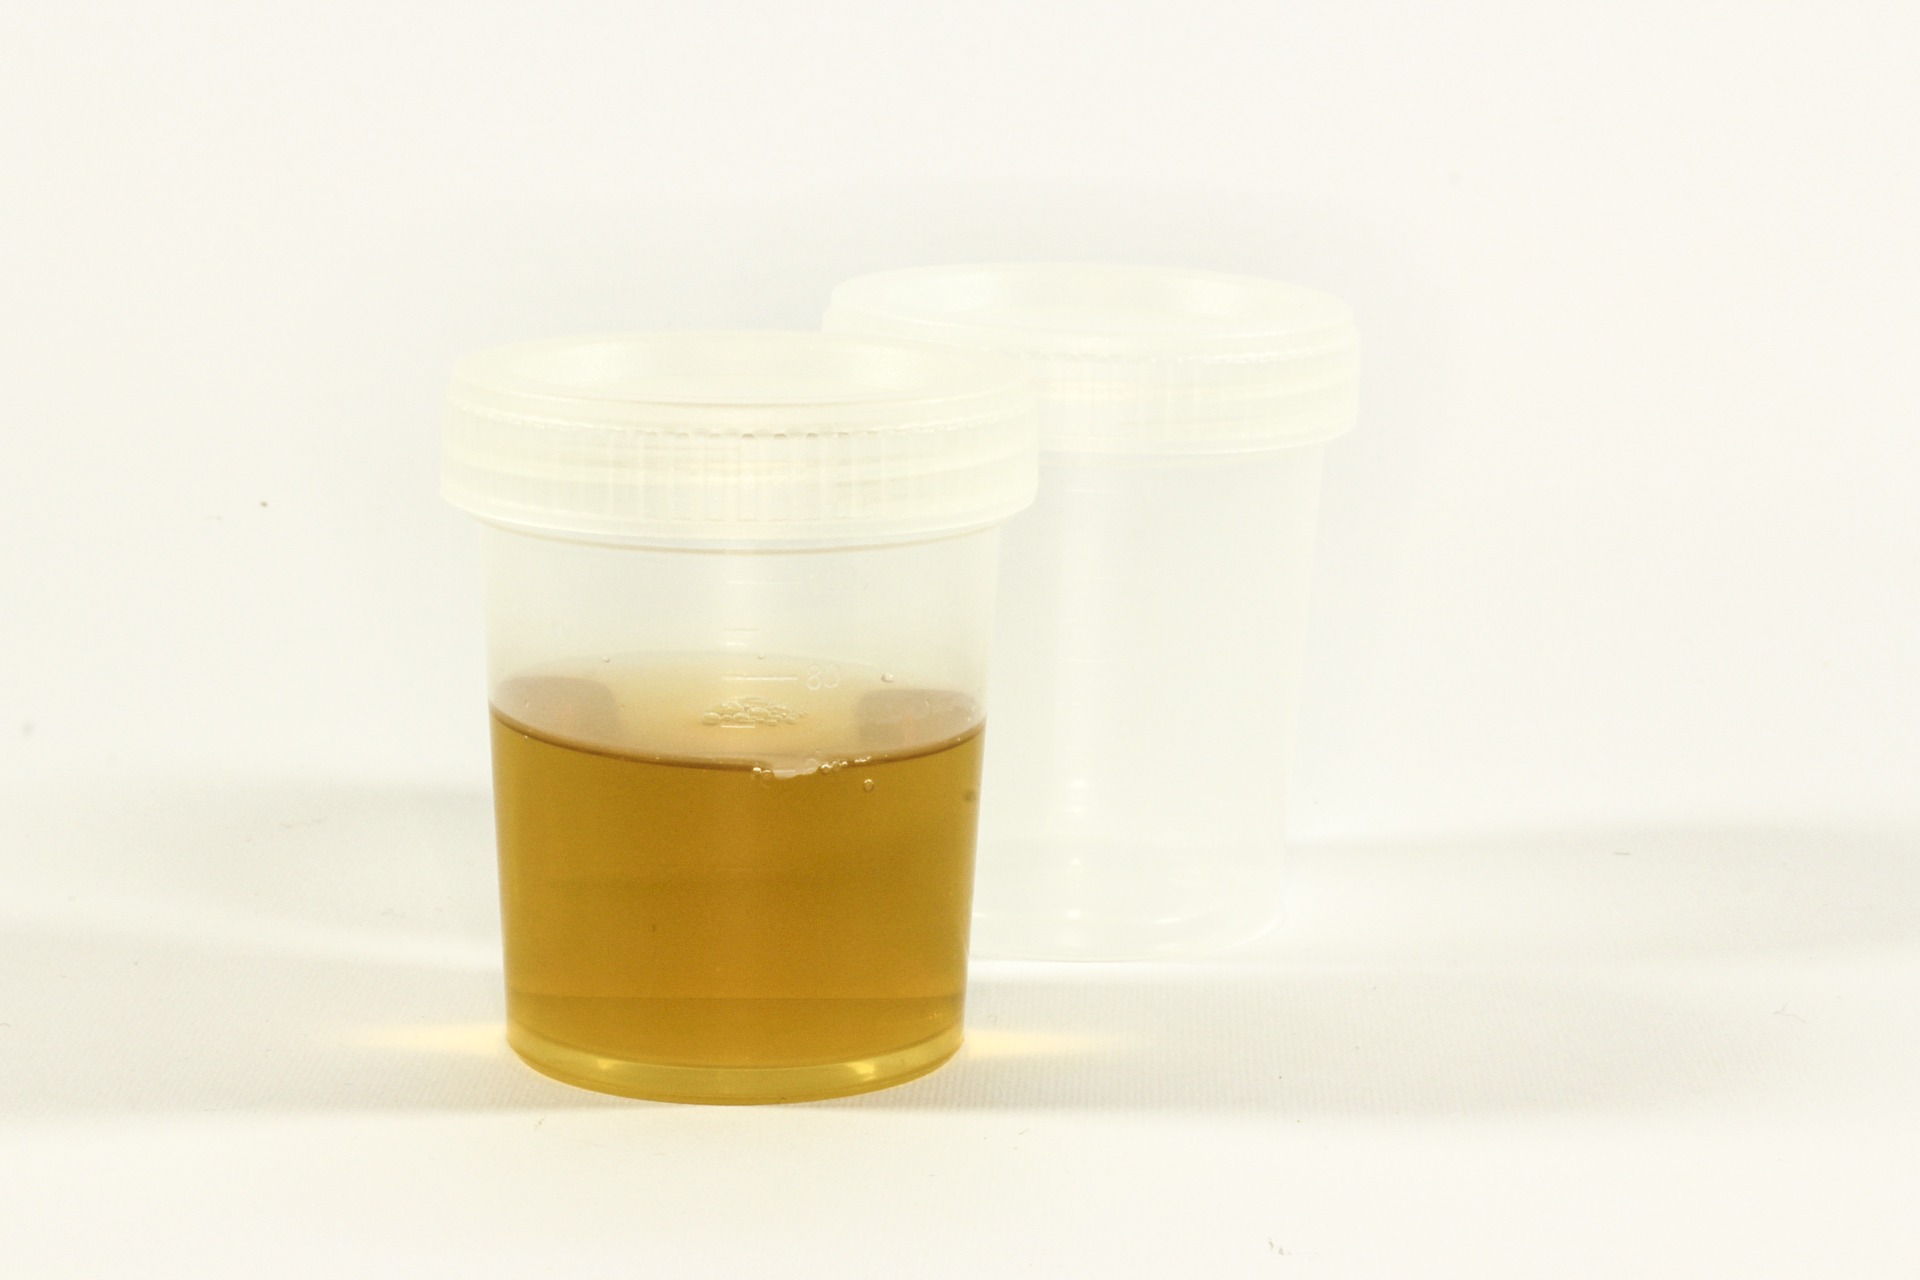 Becher mit Urin, Harn, Natursekt: Möchte man das trinken?